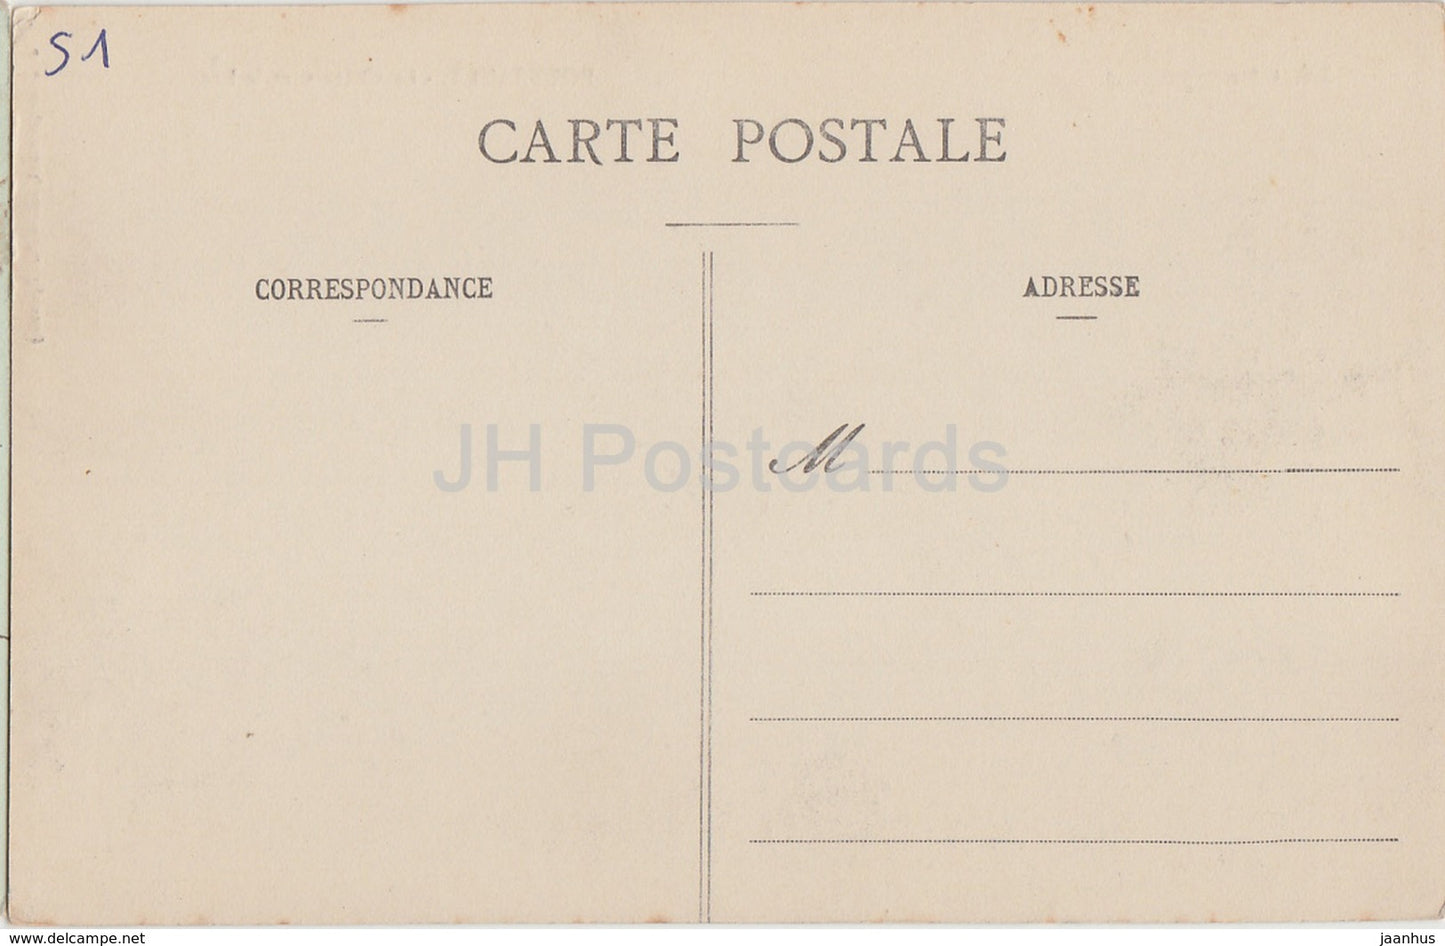 La Champagne - Boursault - Le Chateau et le Lac - Schloss - alte Postkarte - Frankreich - unbenutzt